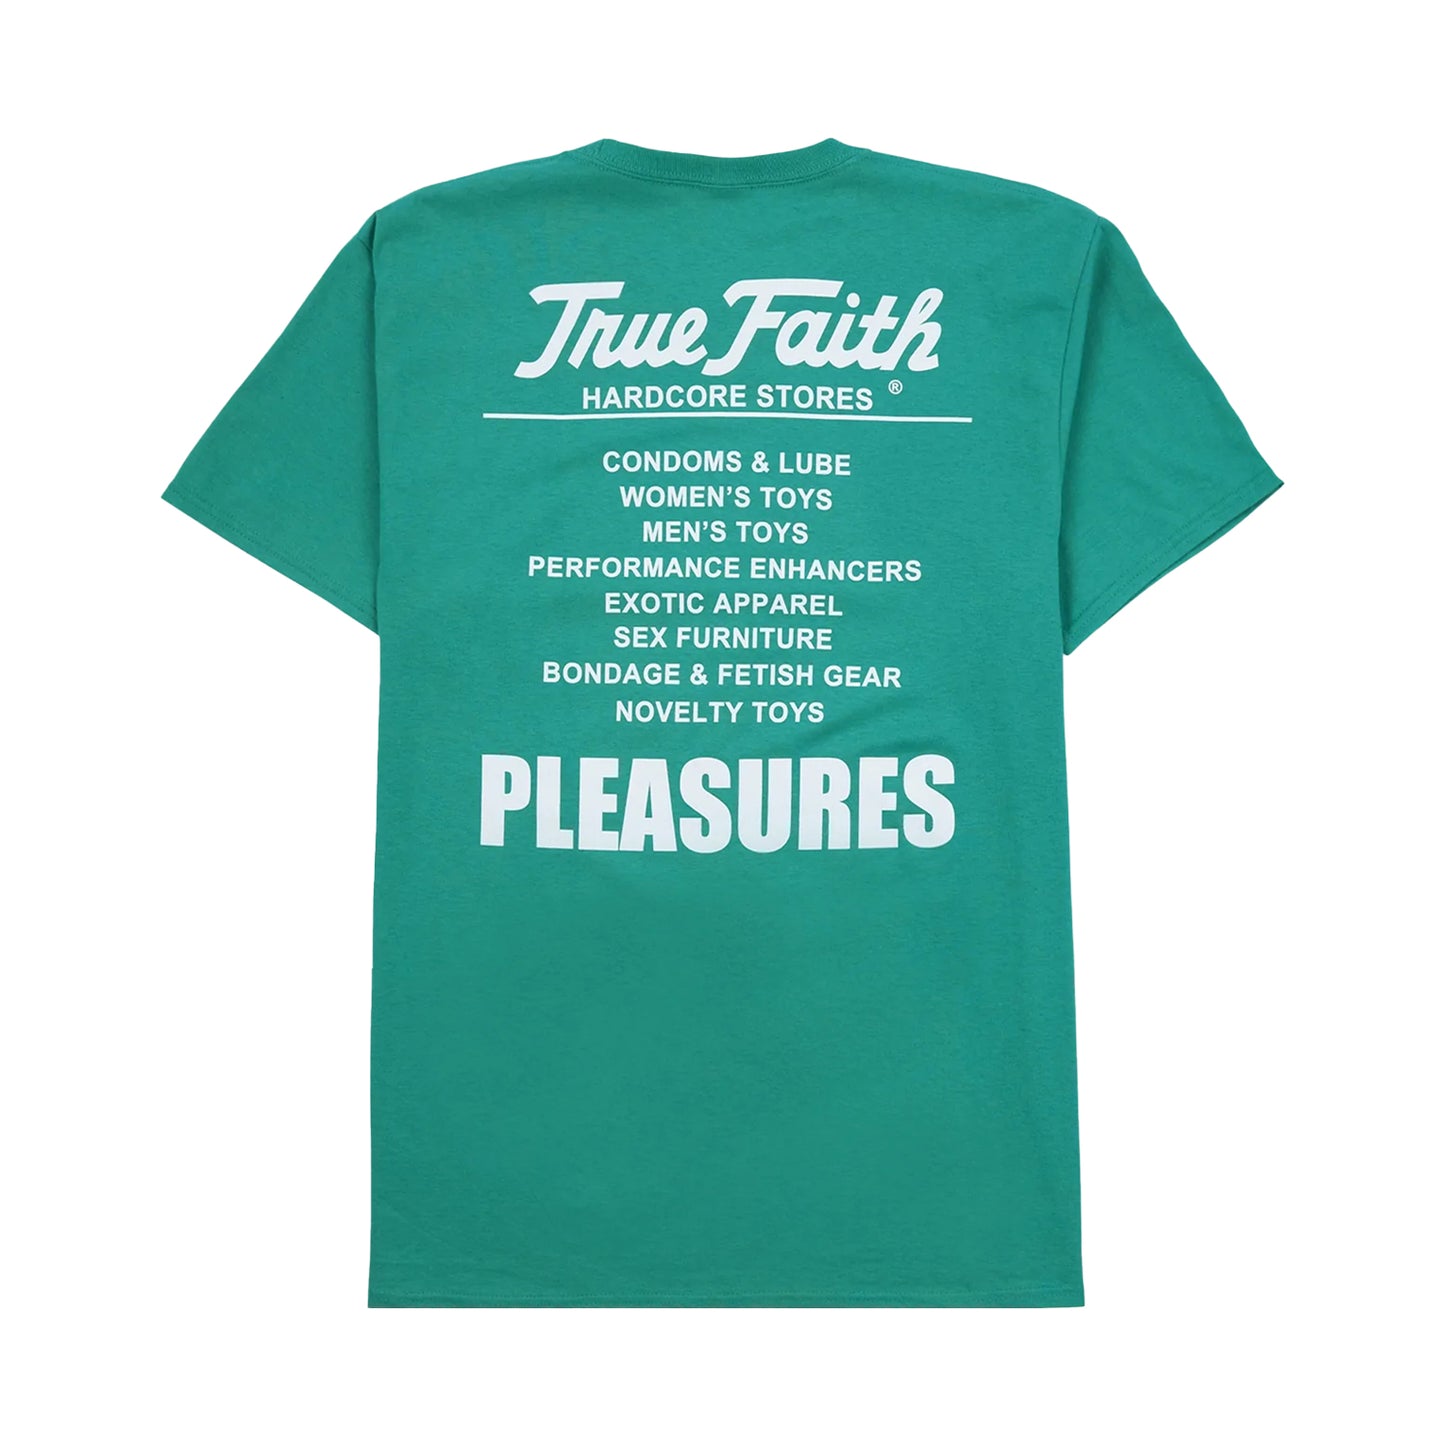 PLEASURES FAITH T-SHIRT